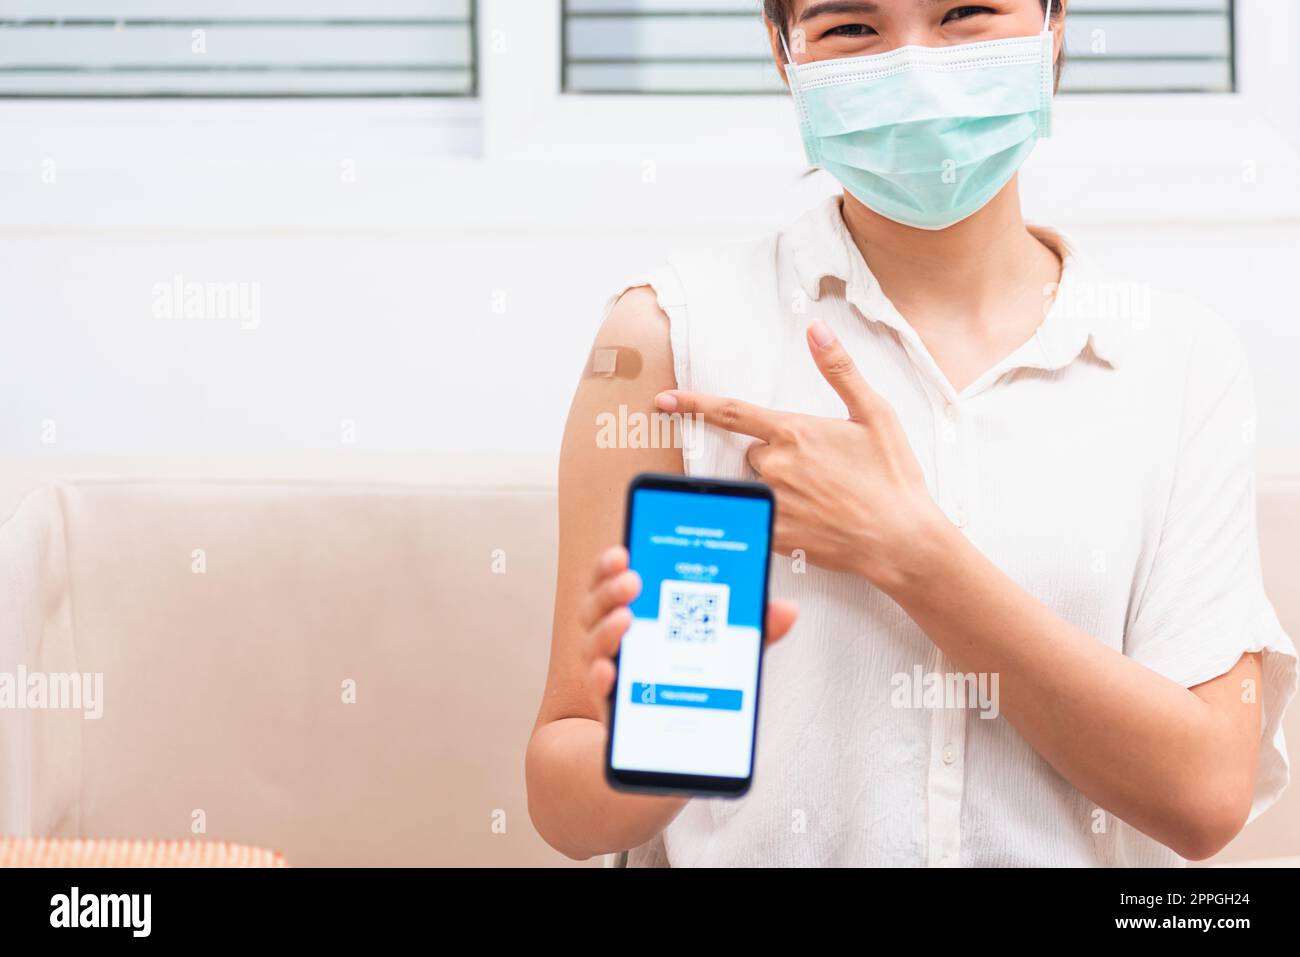 femme montrant du plâtre adhésif sur le bras elle a vacciné et montrant l'application smartphone écran numérique mobile vacciné Banque D'Images